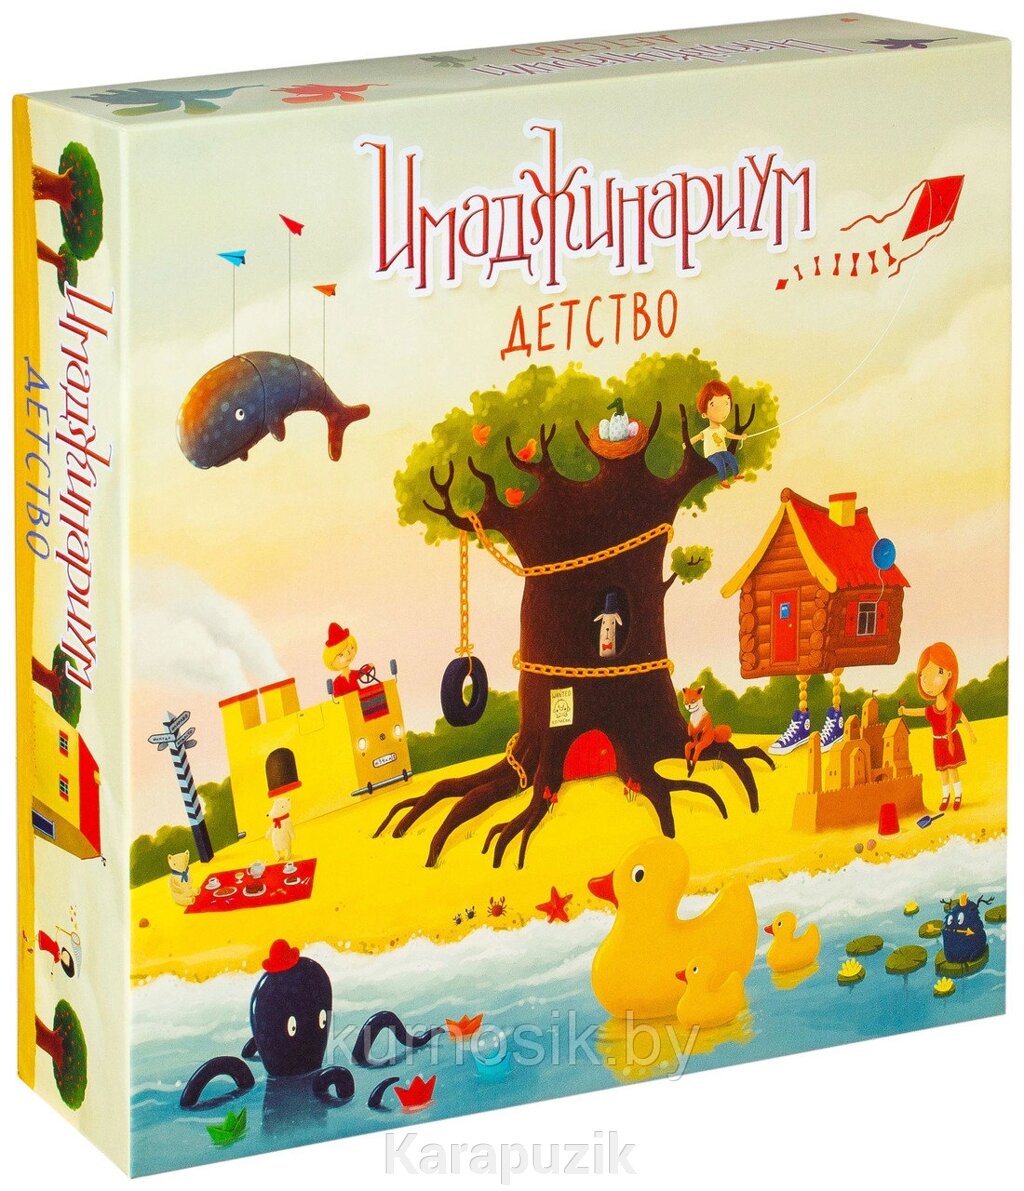 Настольная игра Имаджинариум. Детство от компании Karapuzik - фото 1